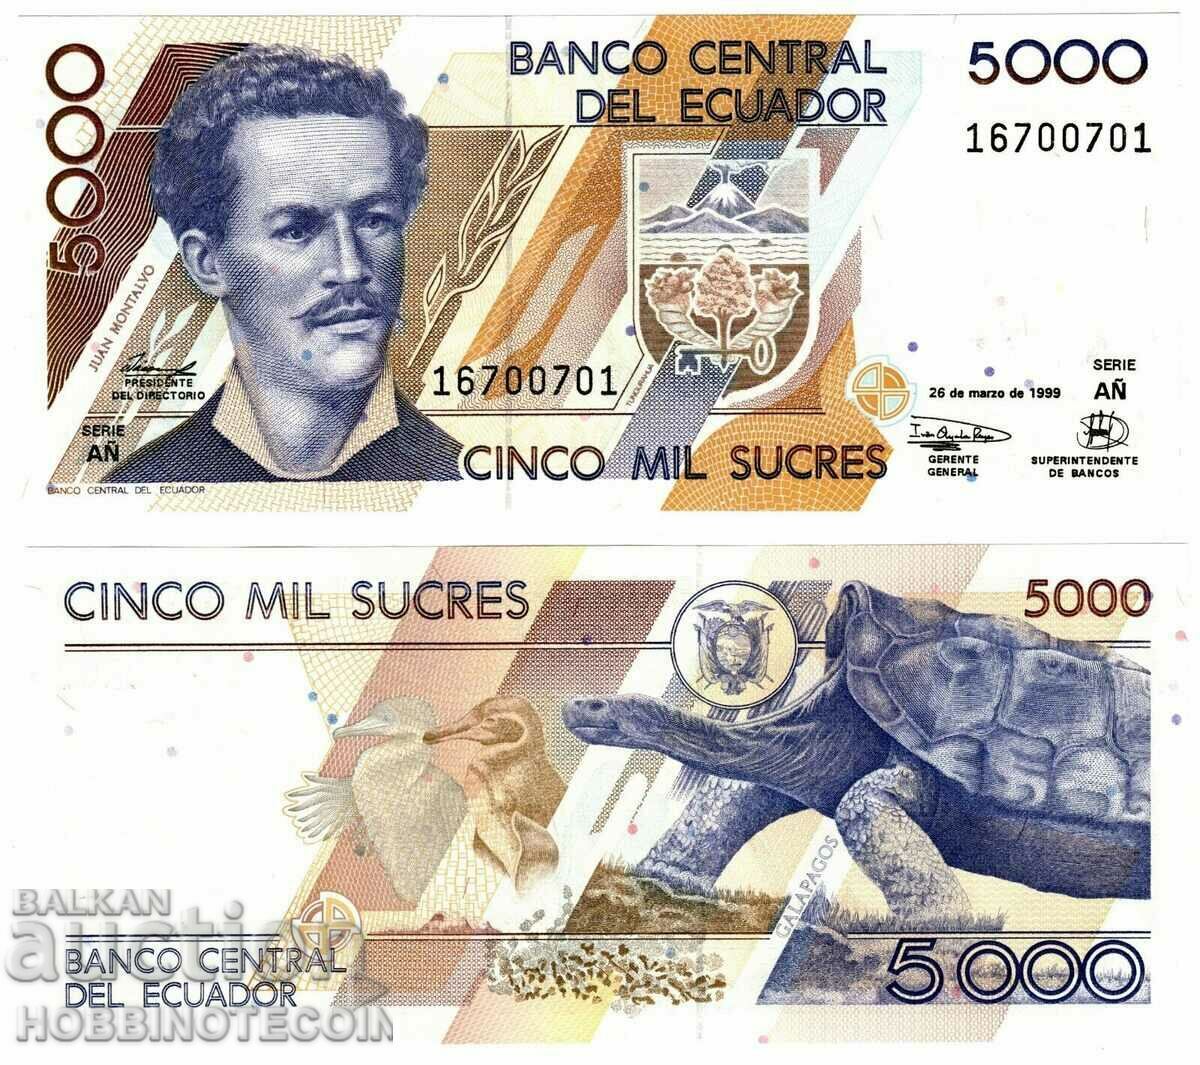 ECUADOR ECUADOR 5000 5000 έκδοση τεύχος 26.03.1999 NEW UNC